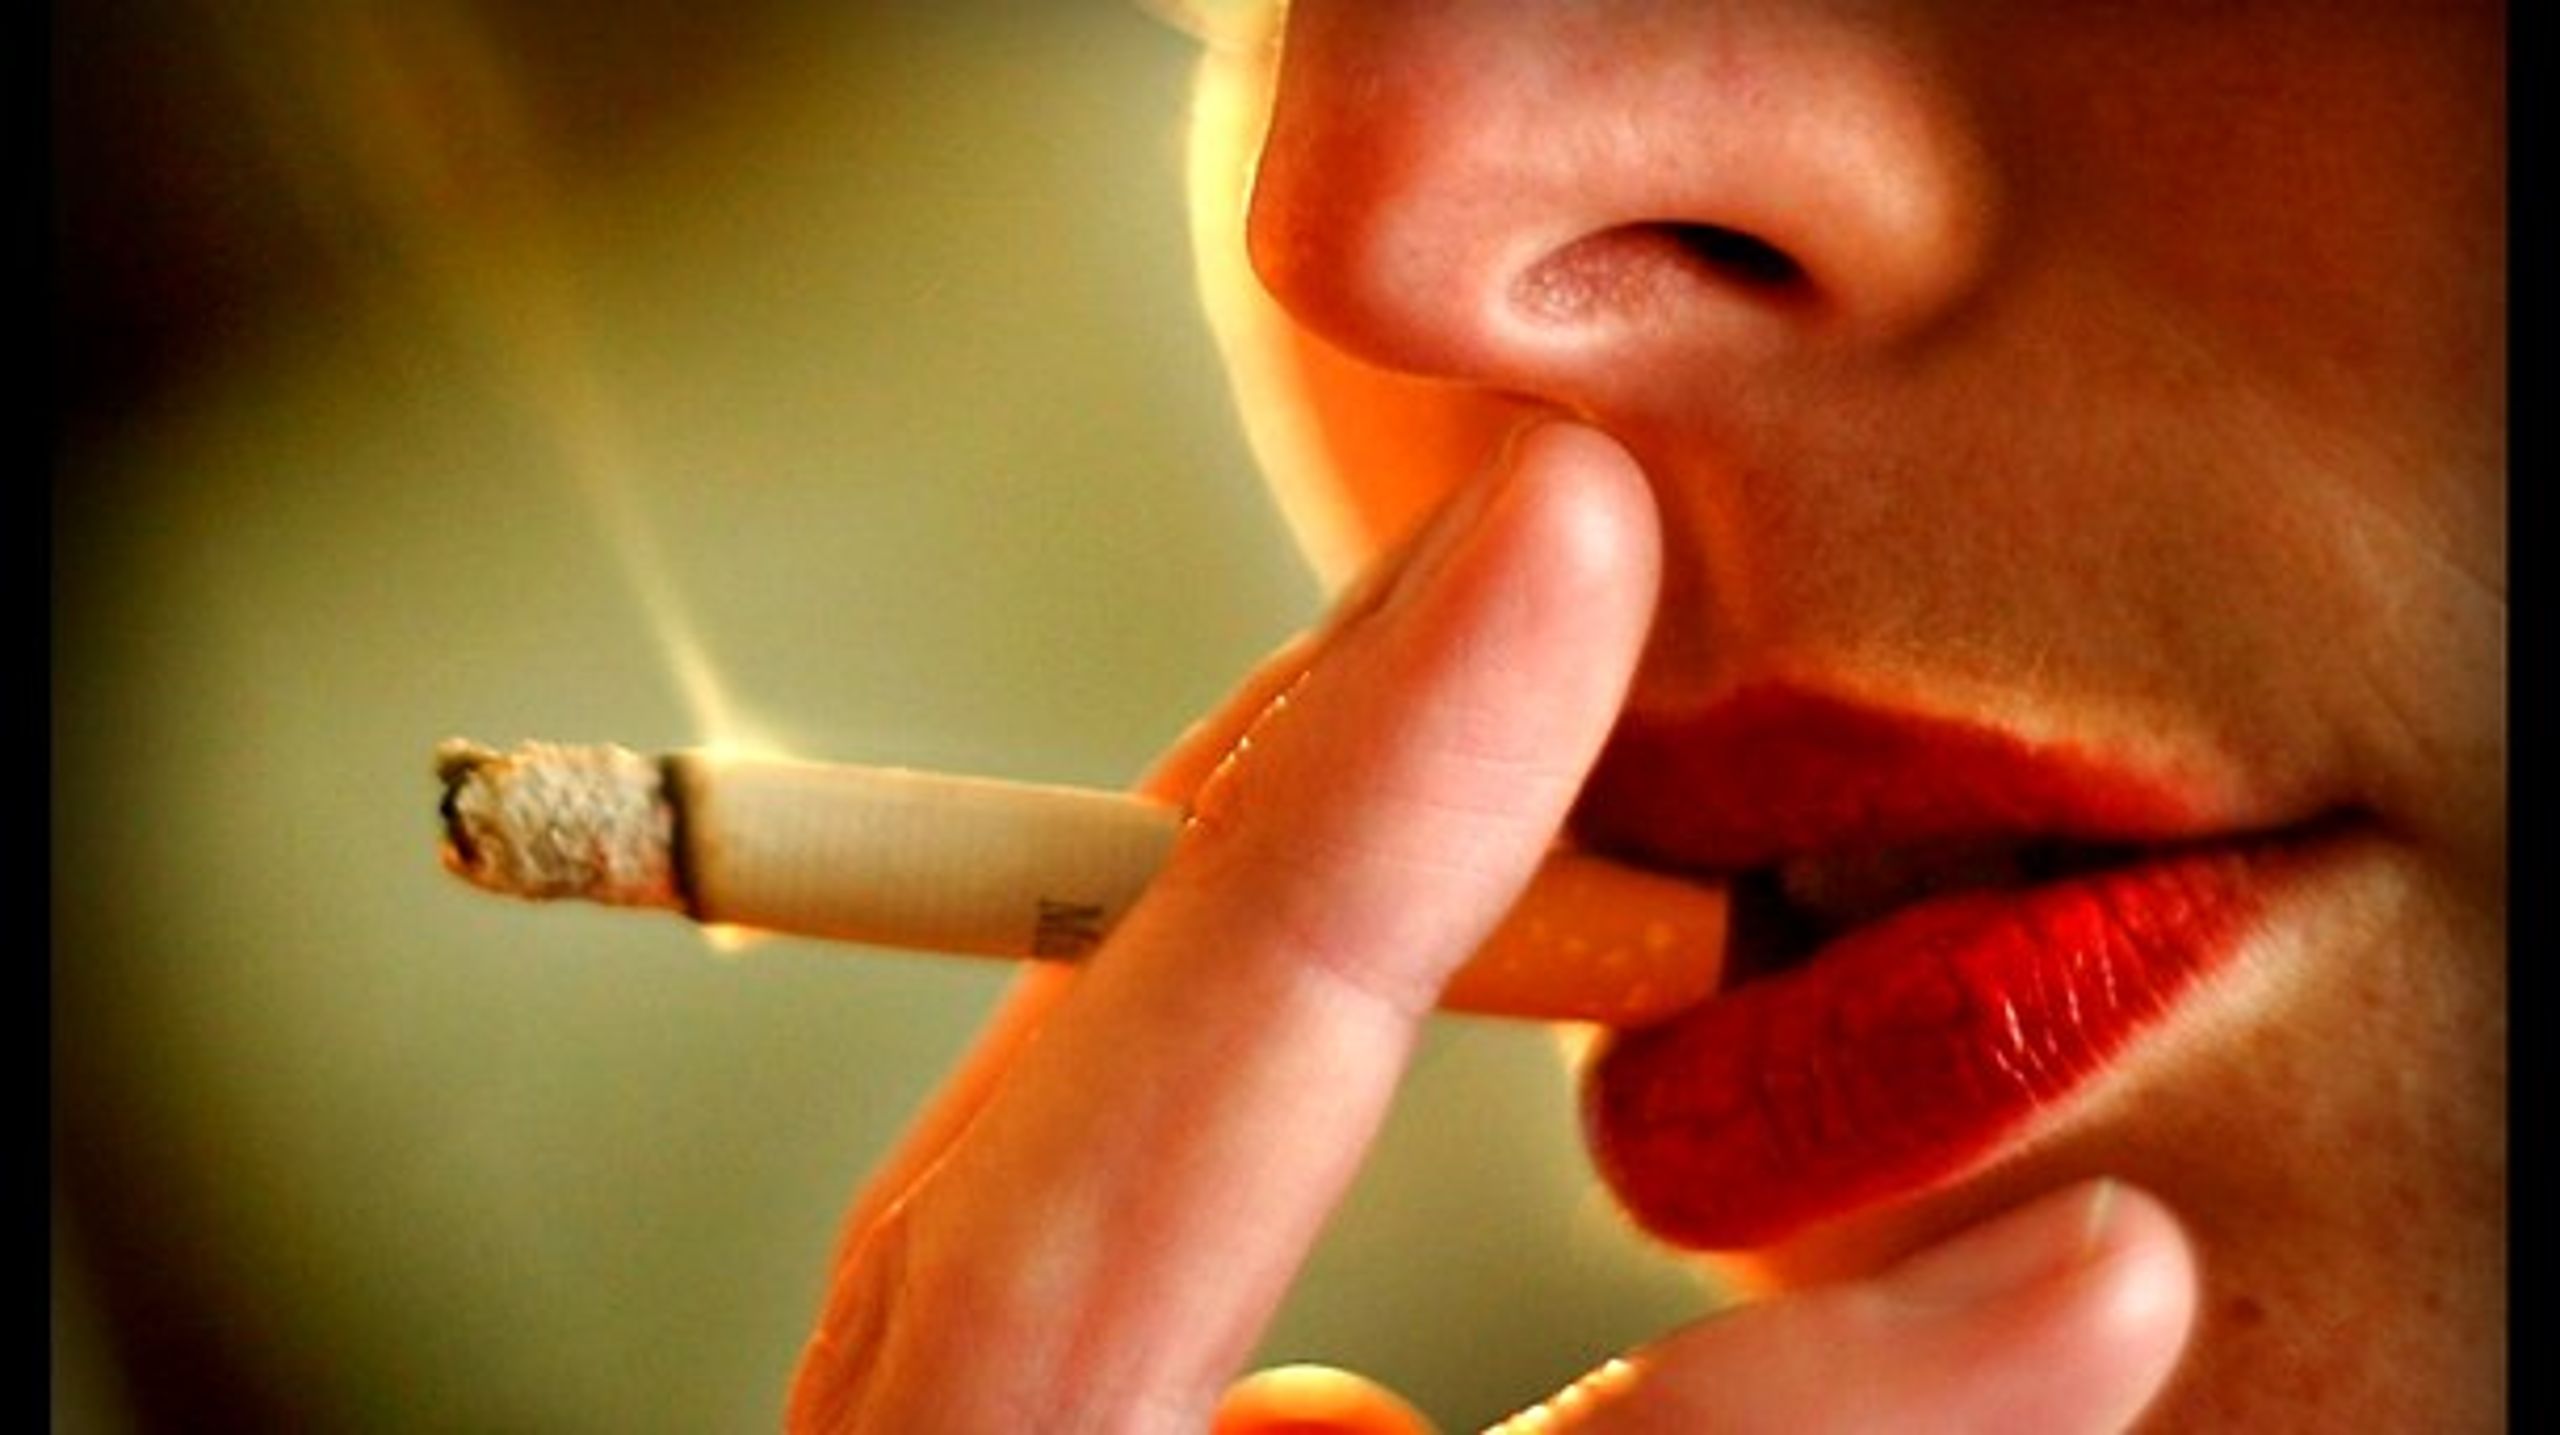 Blandt De Samvirkende Købmænds forslag til en ny tobakslov er der forslag om højere priser, tobak under disken, bøde til unge under 18, der køber tobak, og ID-krav til alle under 23.